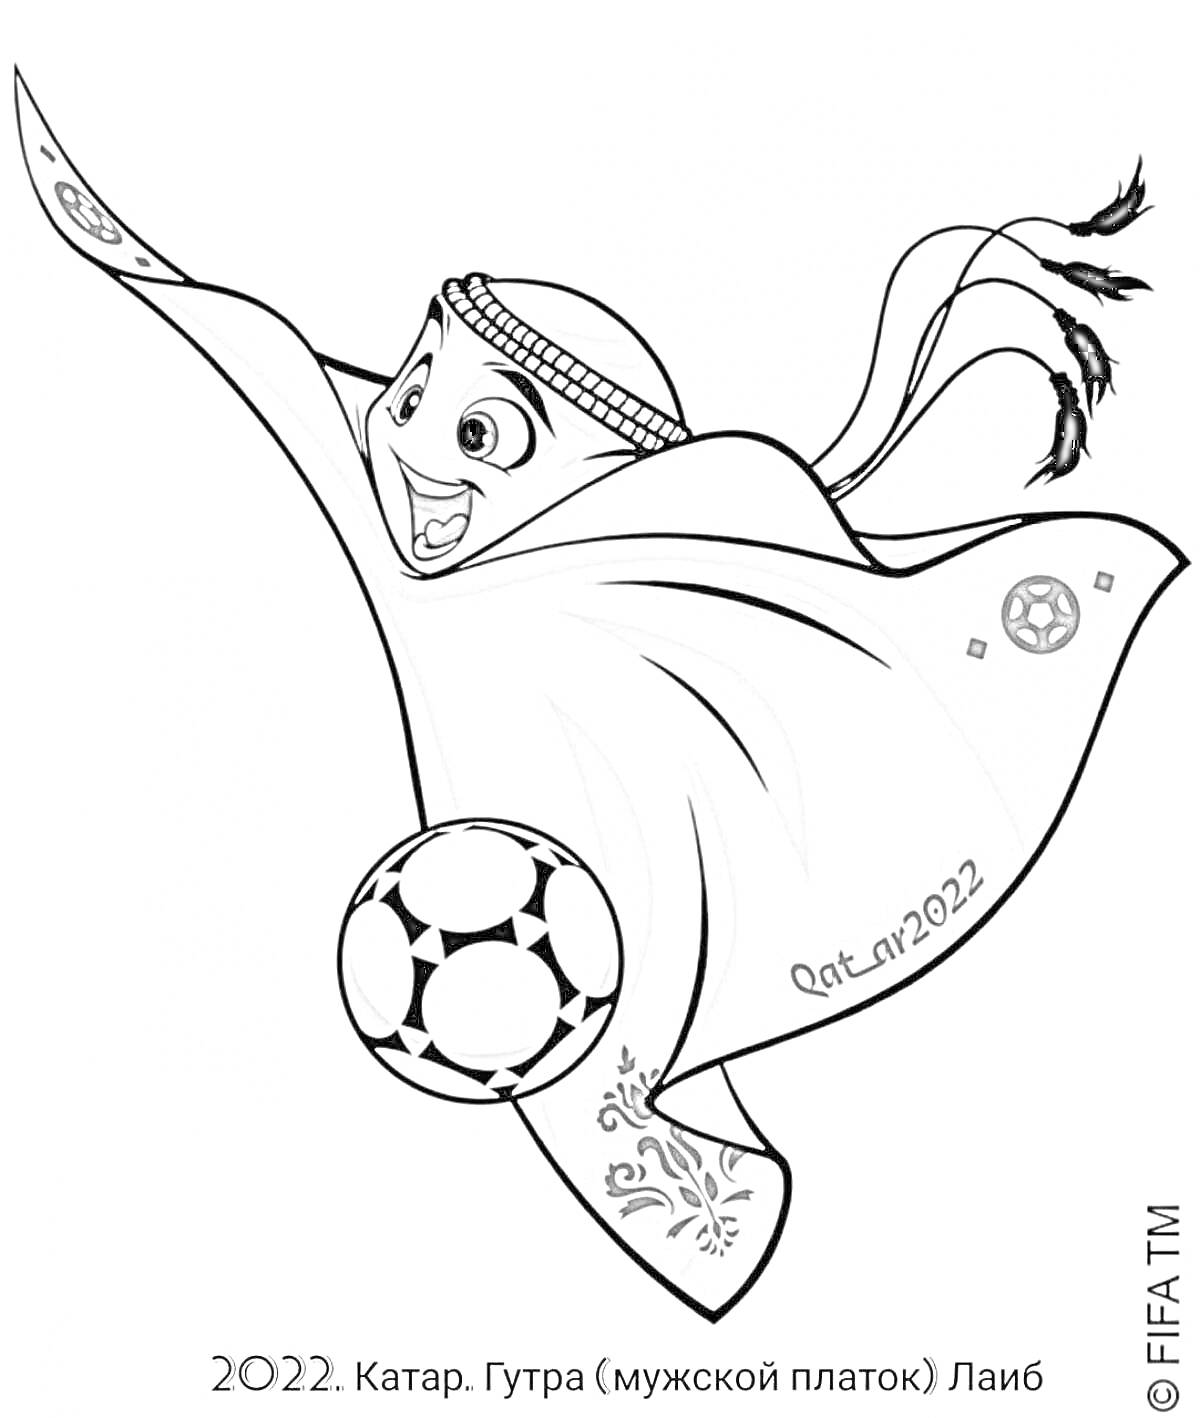 Раскраска Талисман чемпионата мира по футболу 2022 в Катаре, Ла'иб - летящий гутра (мужской платок) с футбольным мячом